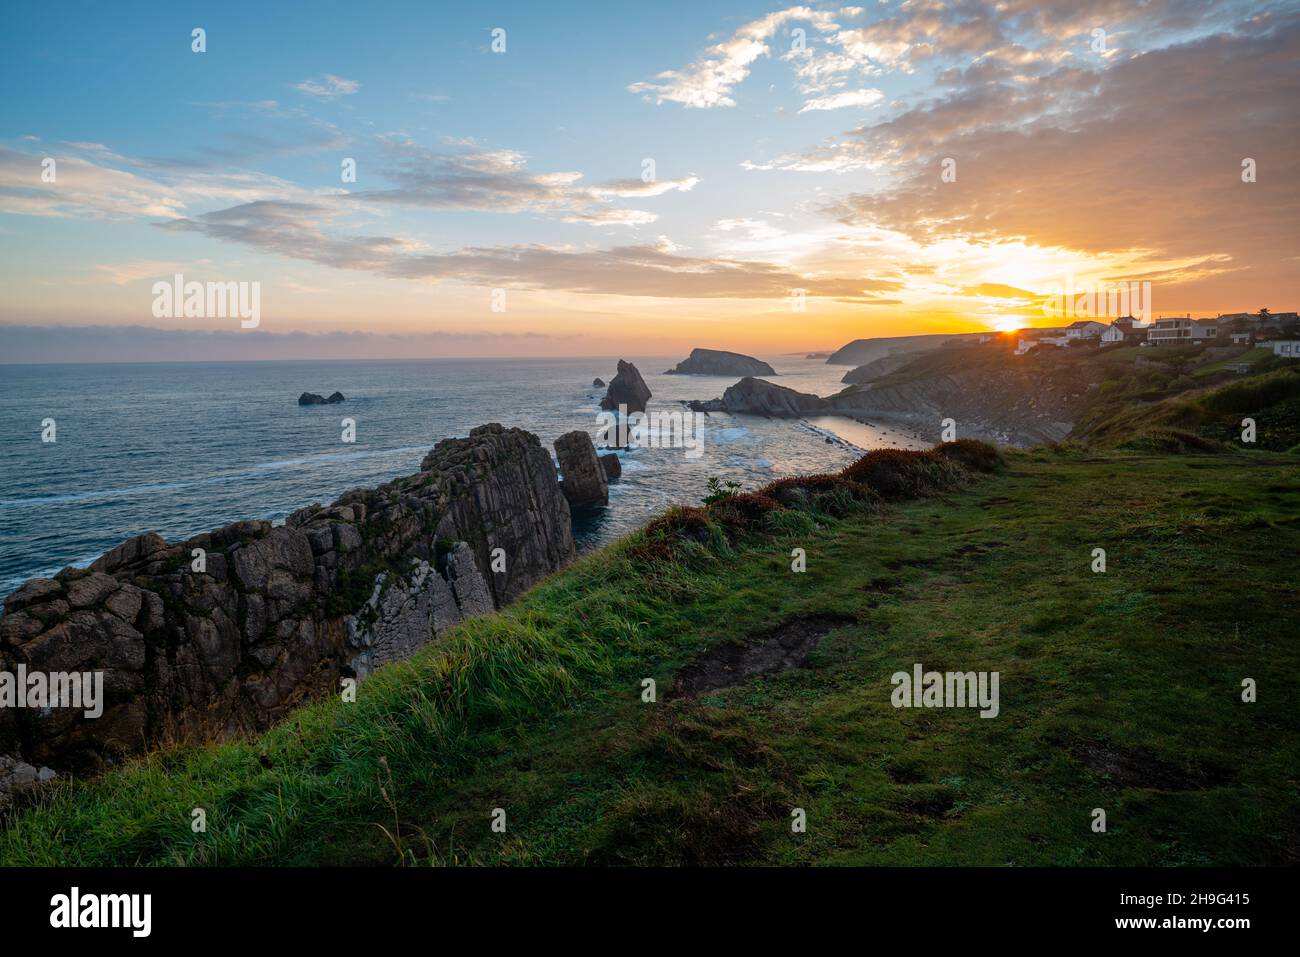 Des falaises incroyables sur la côte espagnole près de Santander pendant un beau lever de soleil. Banque D'Images